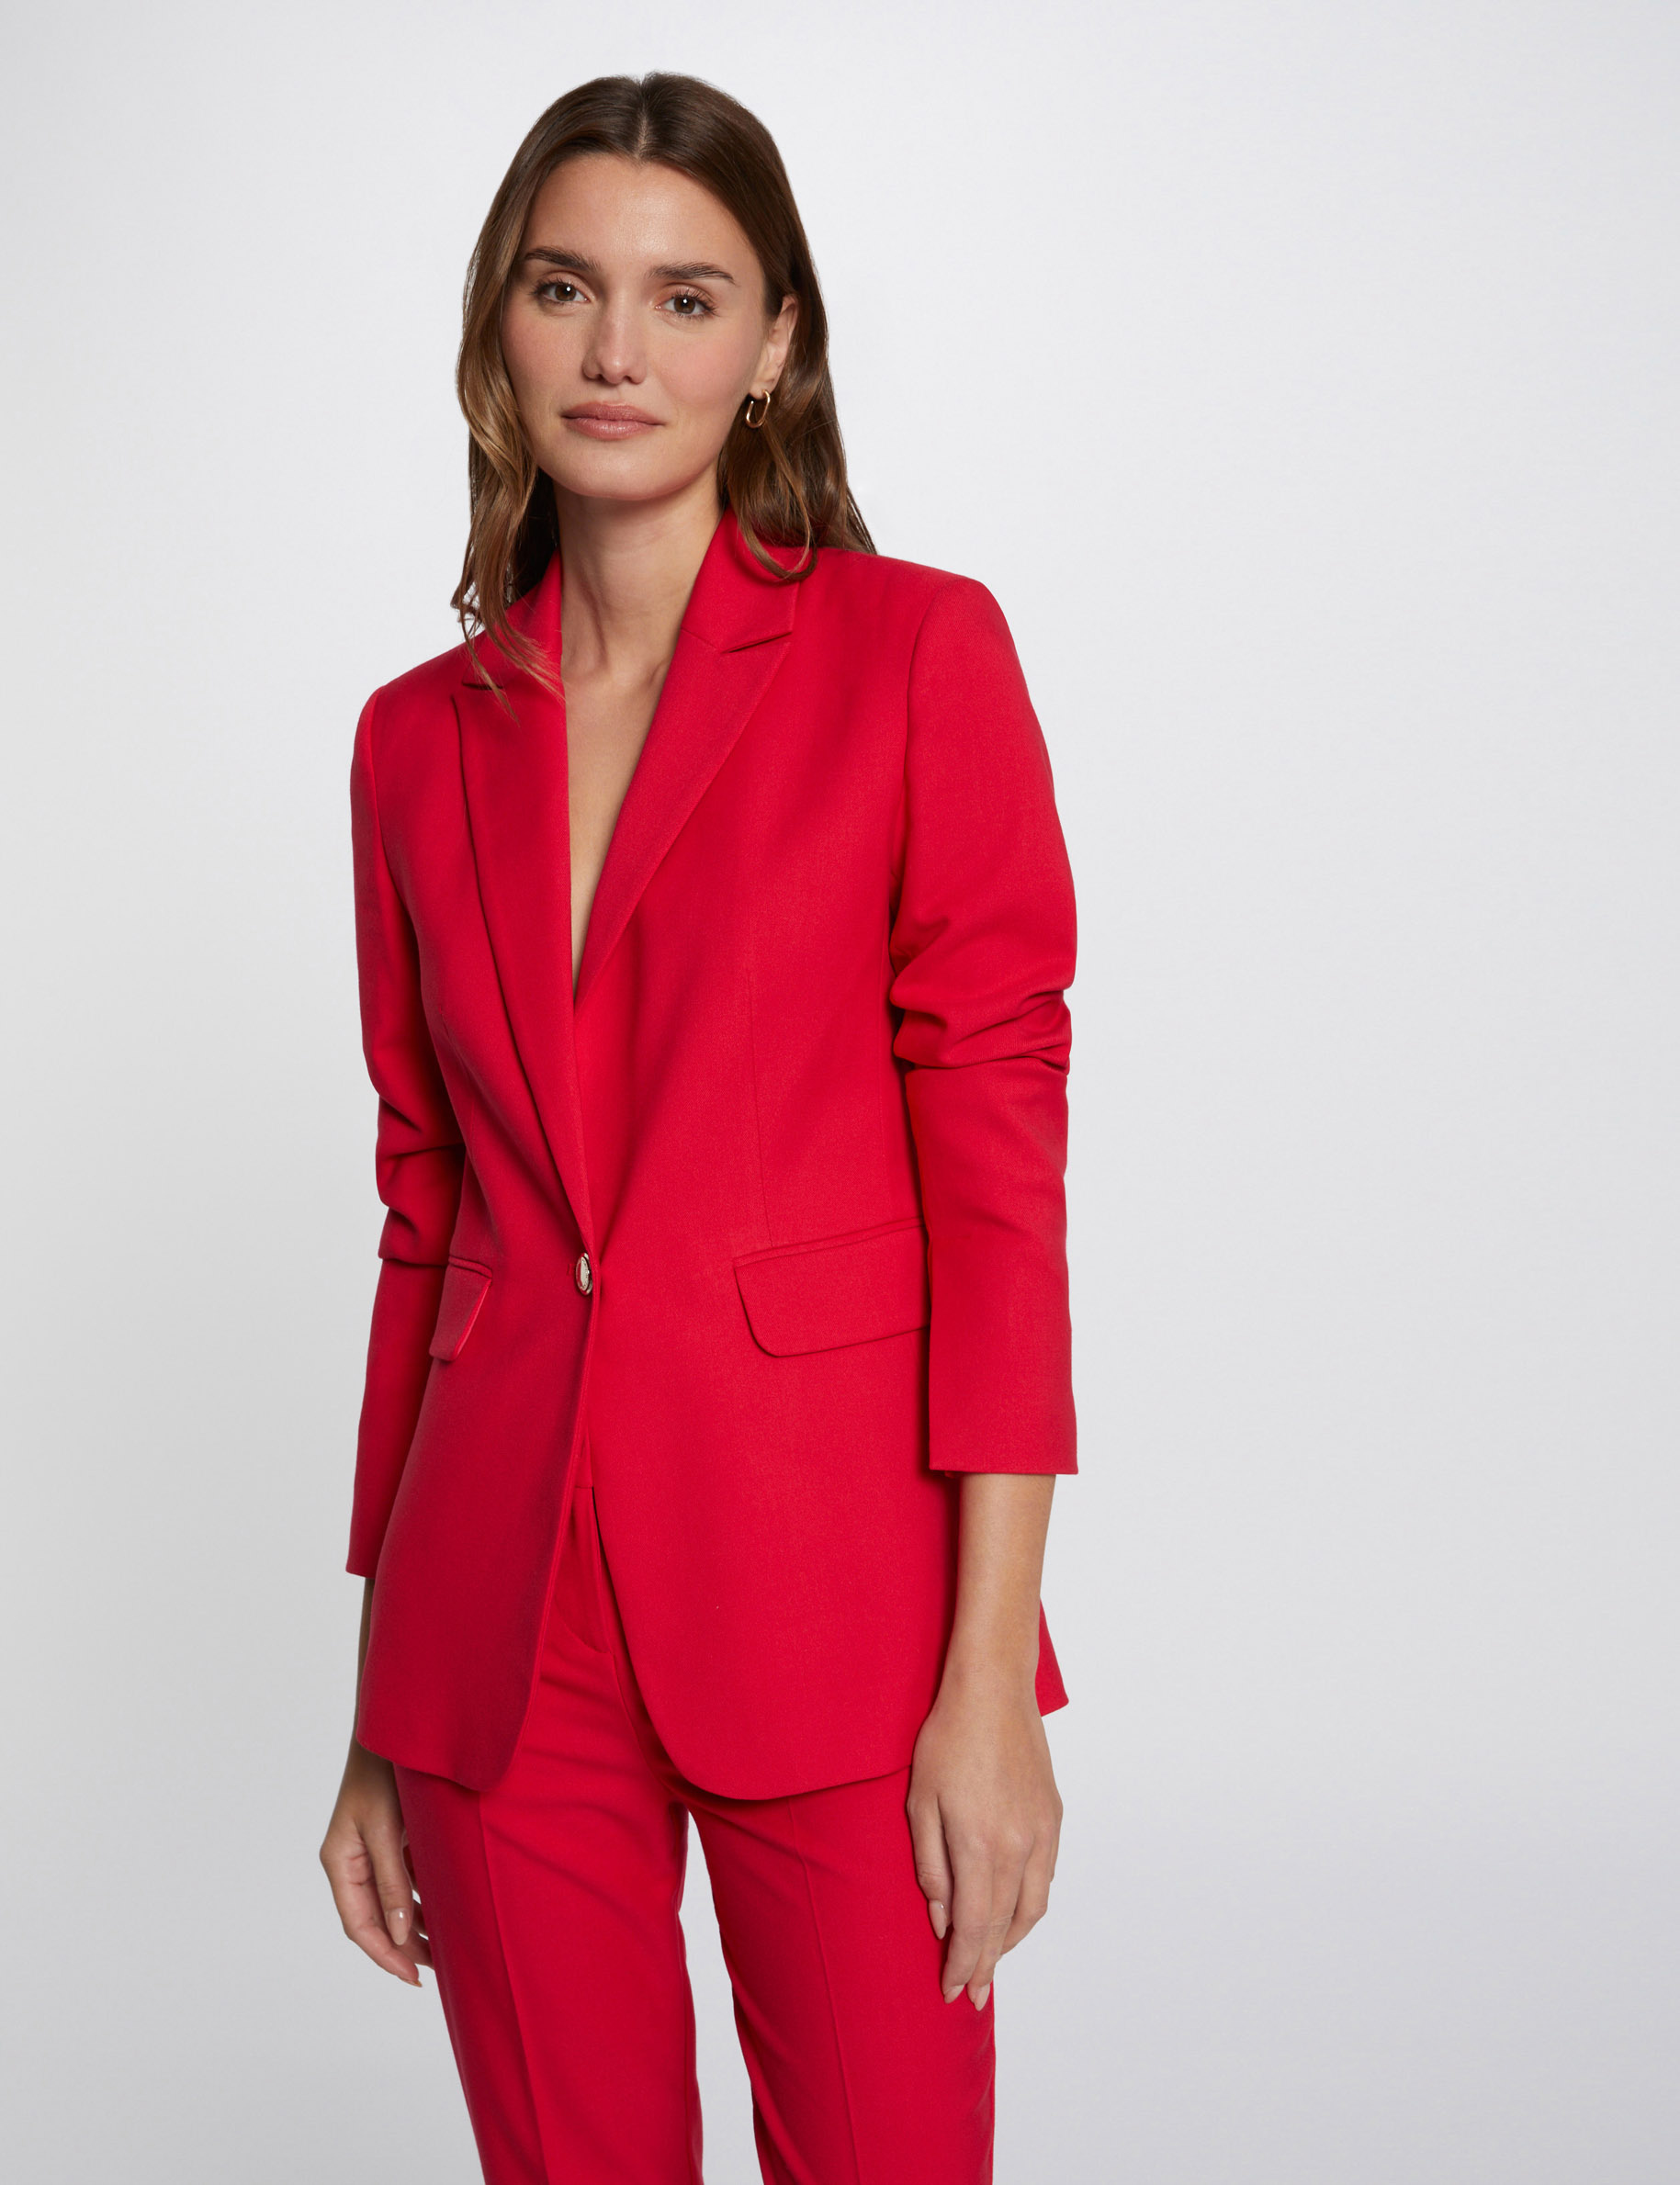 Buttoned blazer medium red ladies'